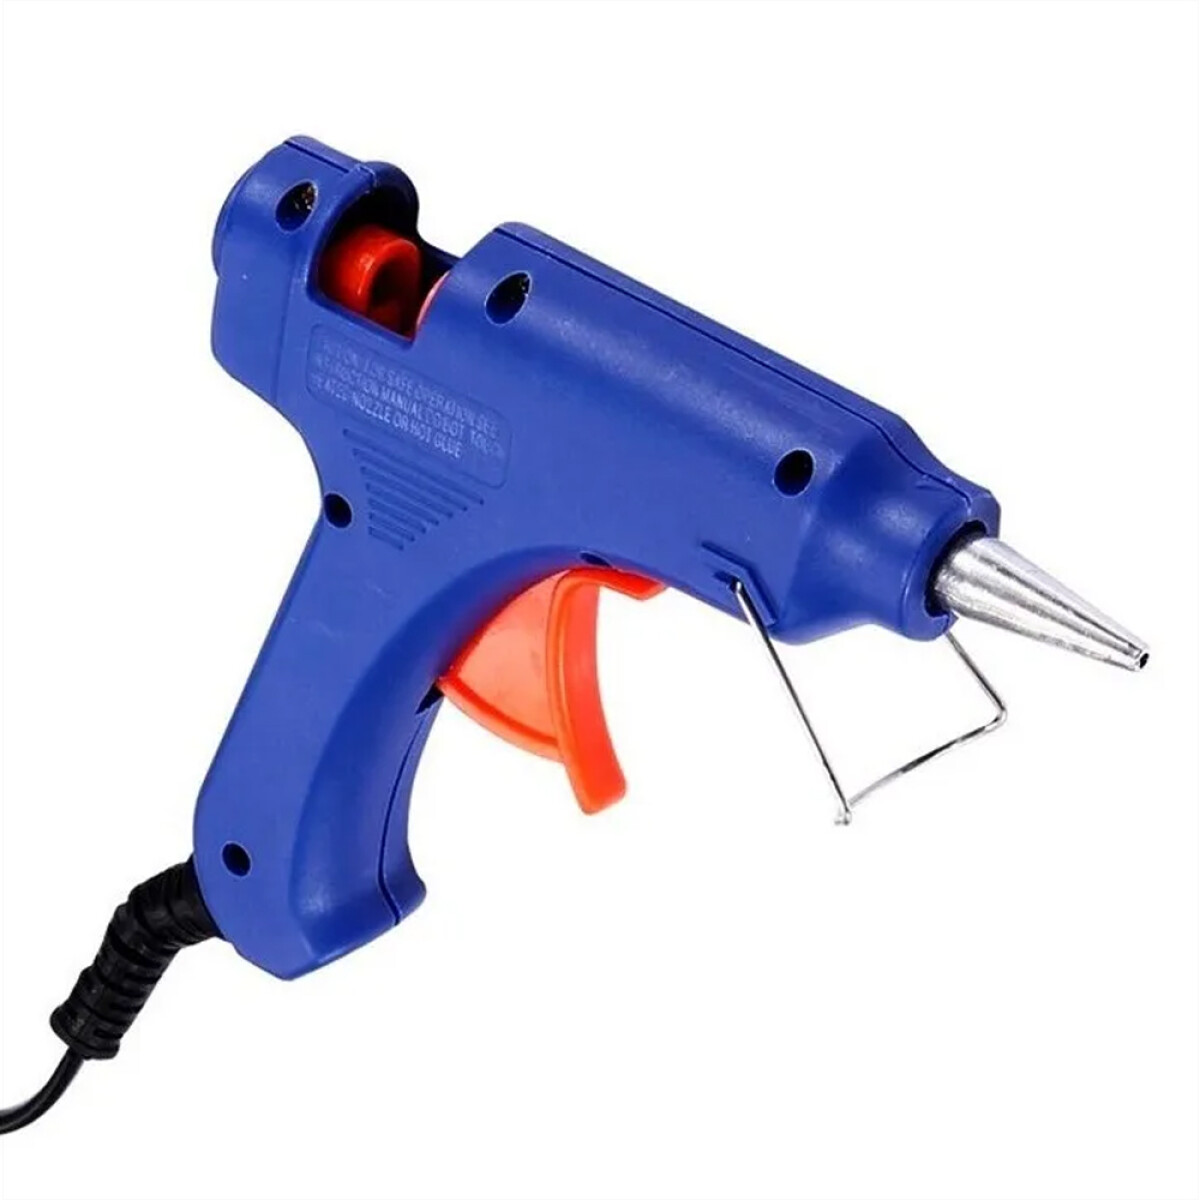 Pistola De Silicona Con Interruptor Excelente Calidad 20w - Azul 